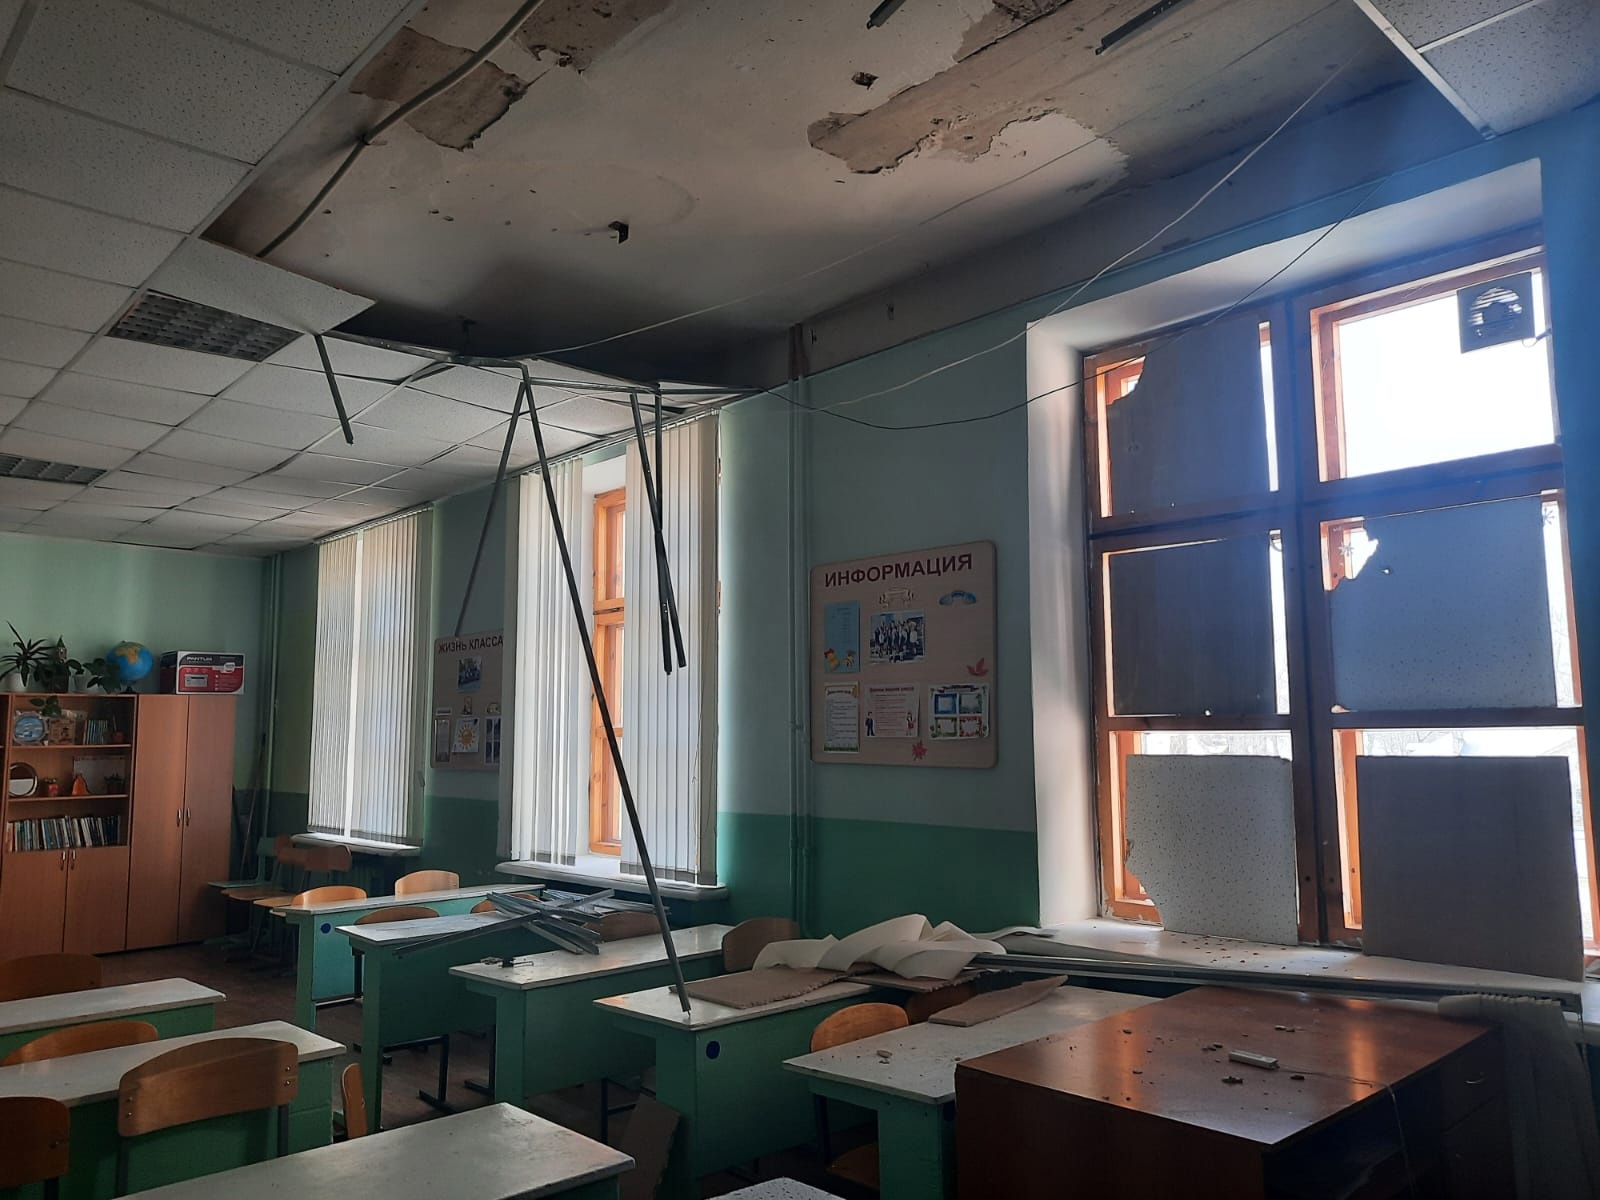 Следователи начали проверку после обрушения потолка в ульяновской гимназии 19 апреля